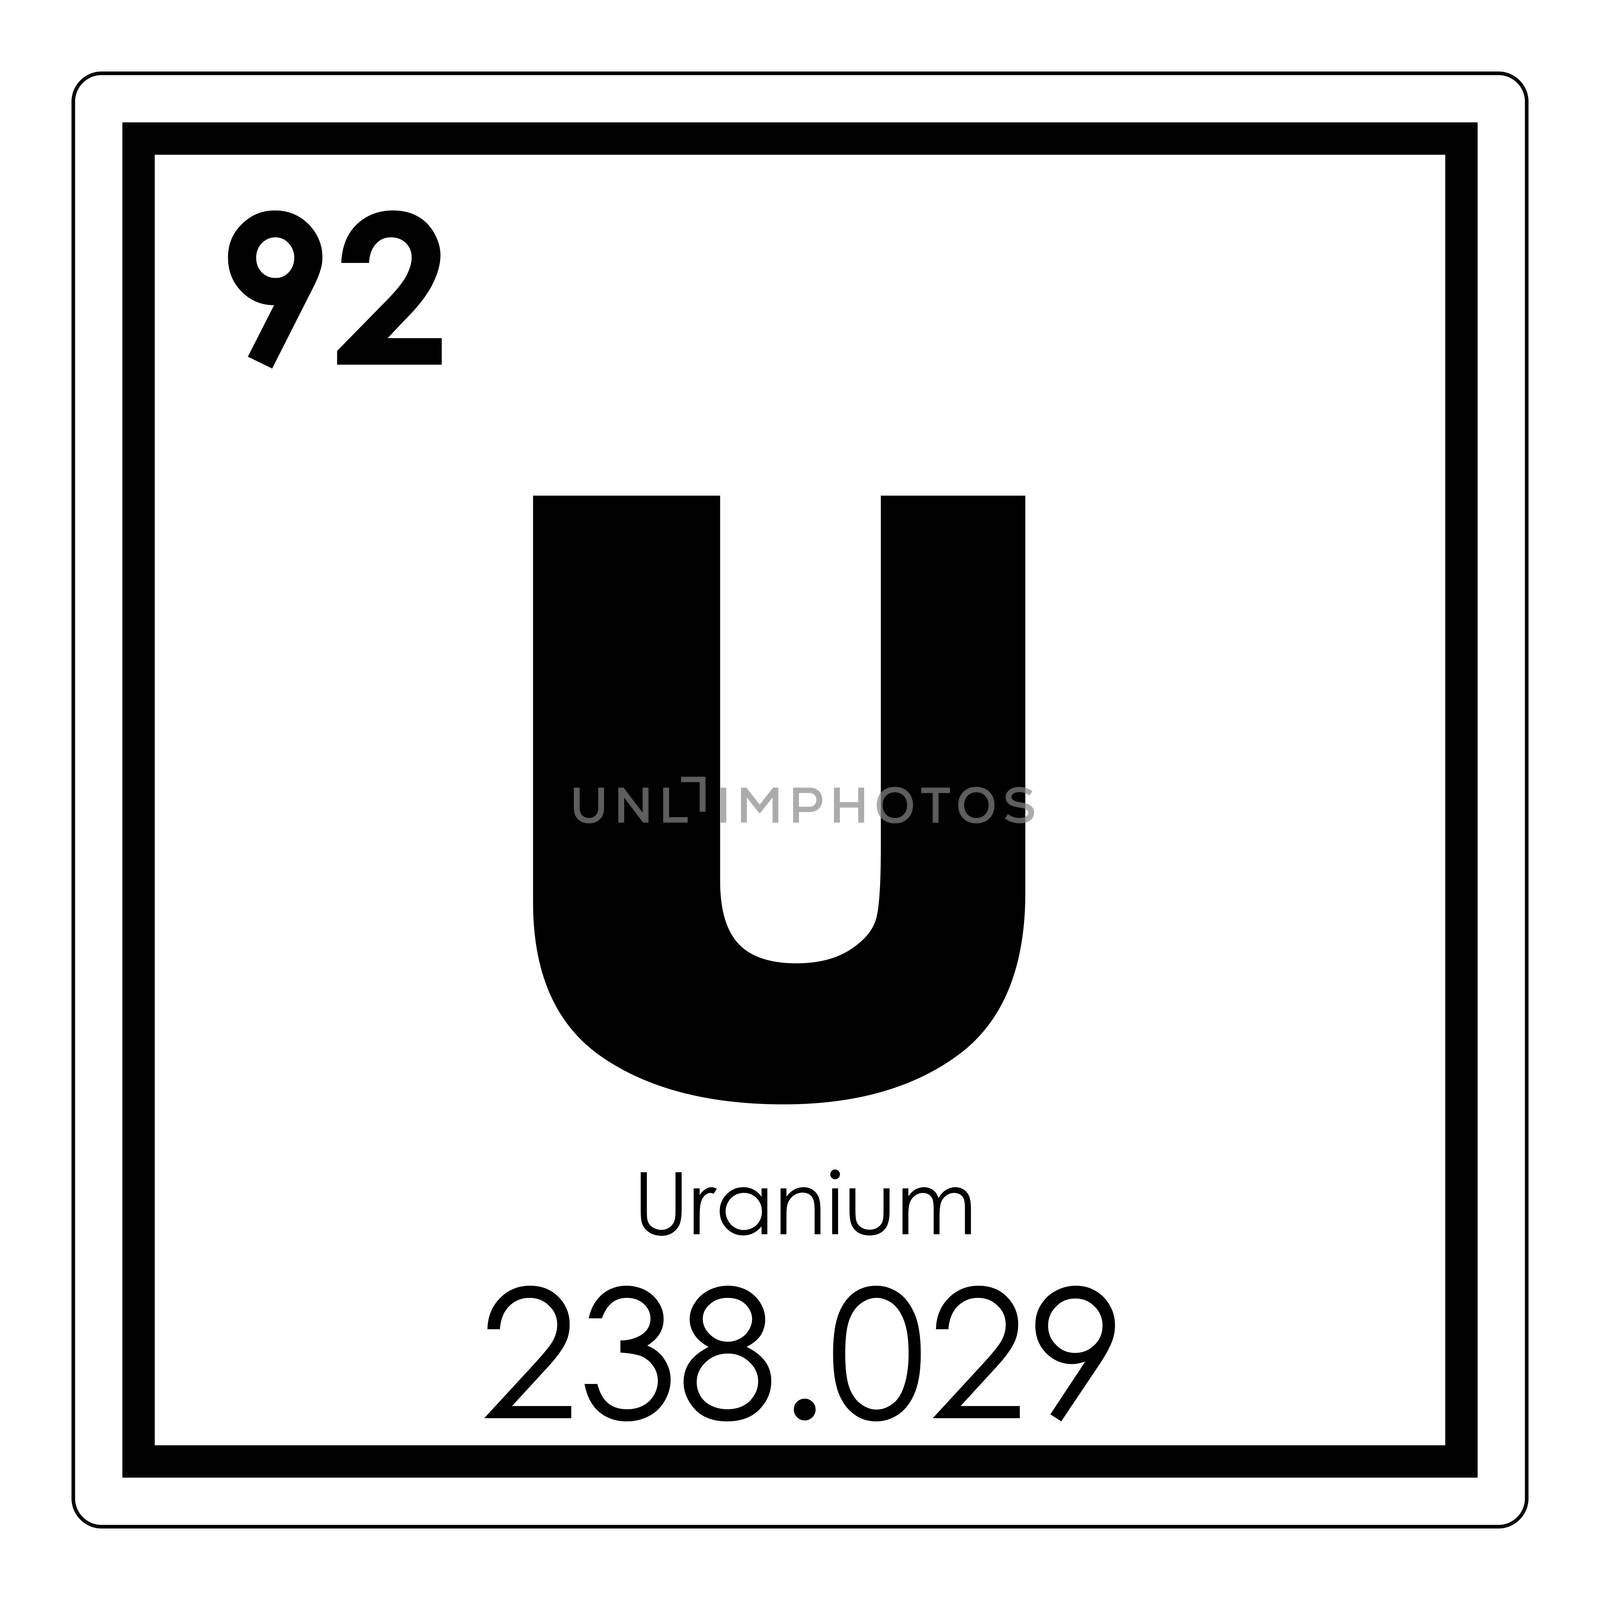 Uranium chemical element periodic table science symbol